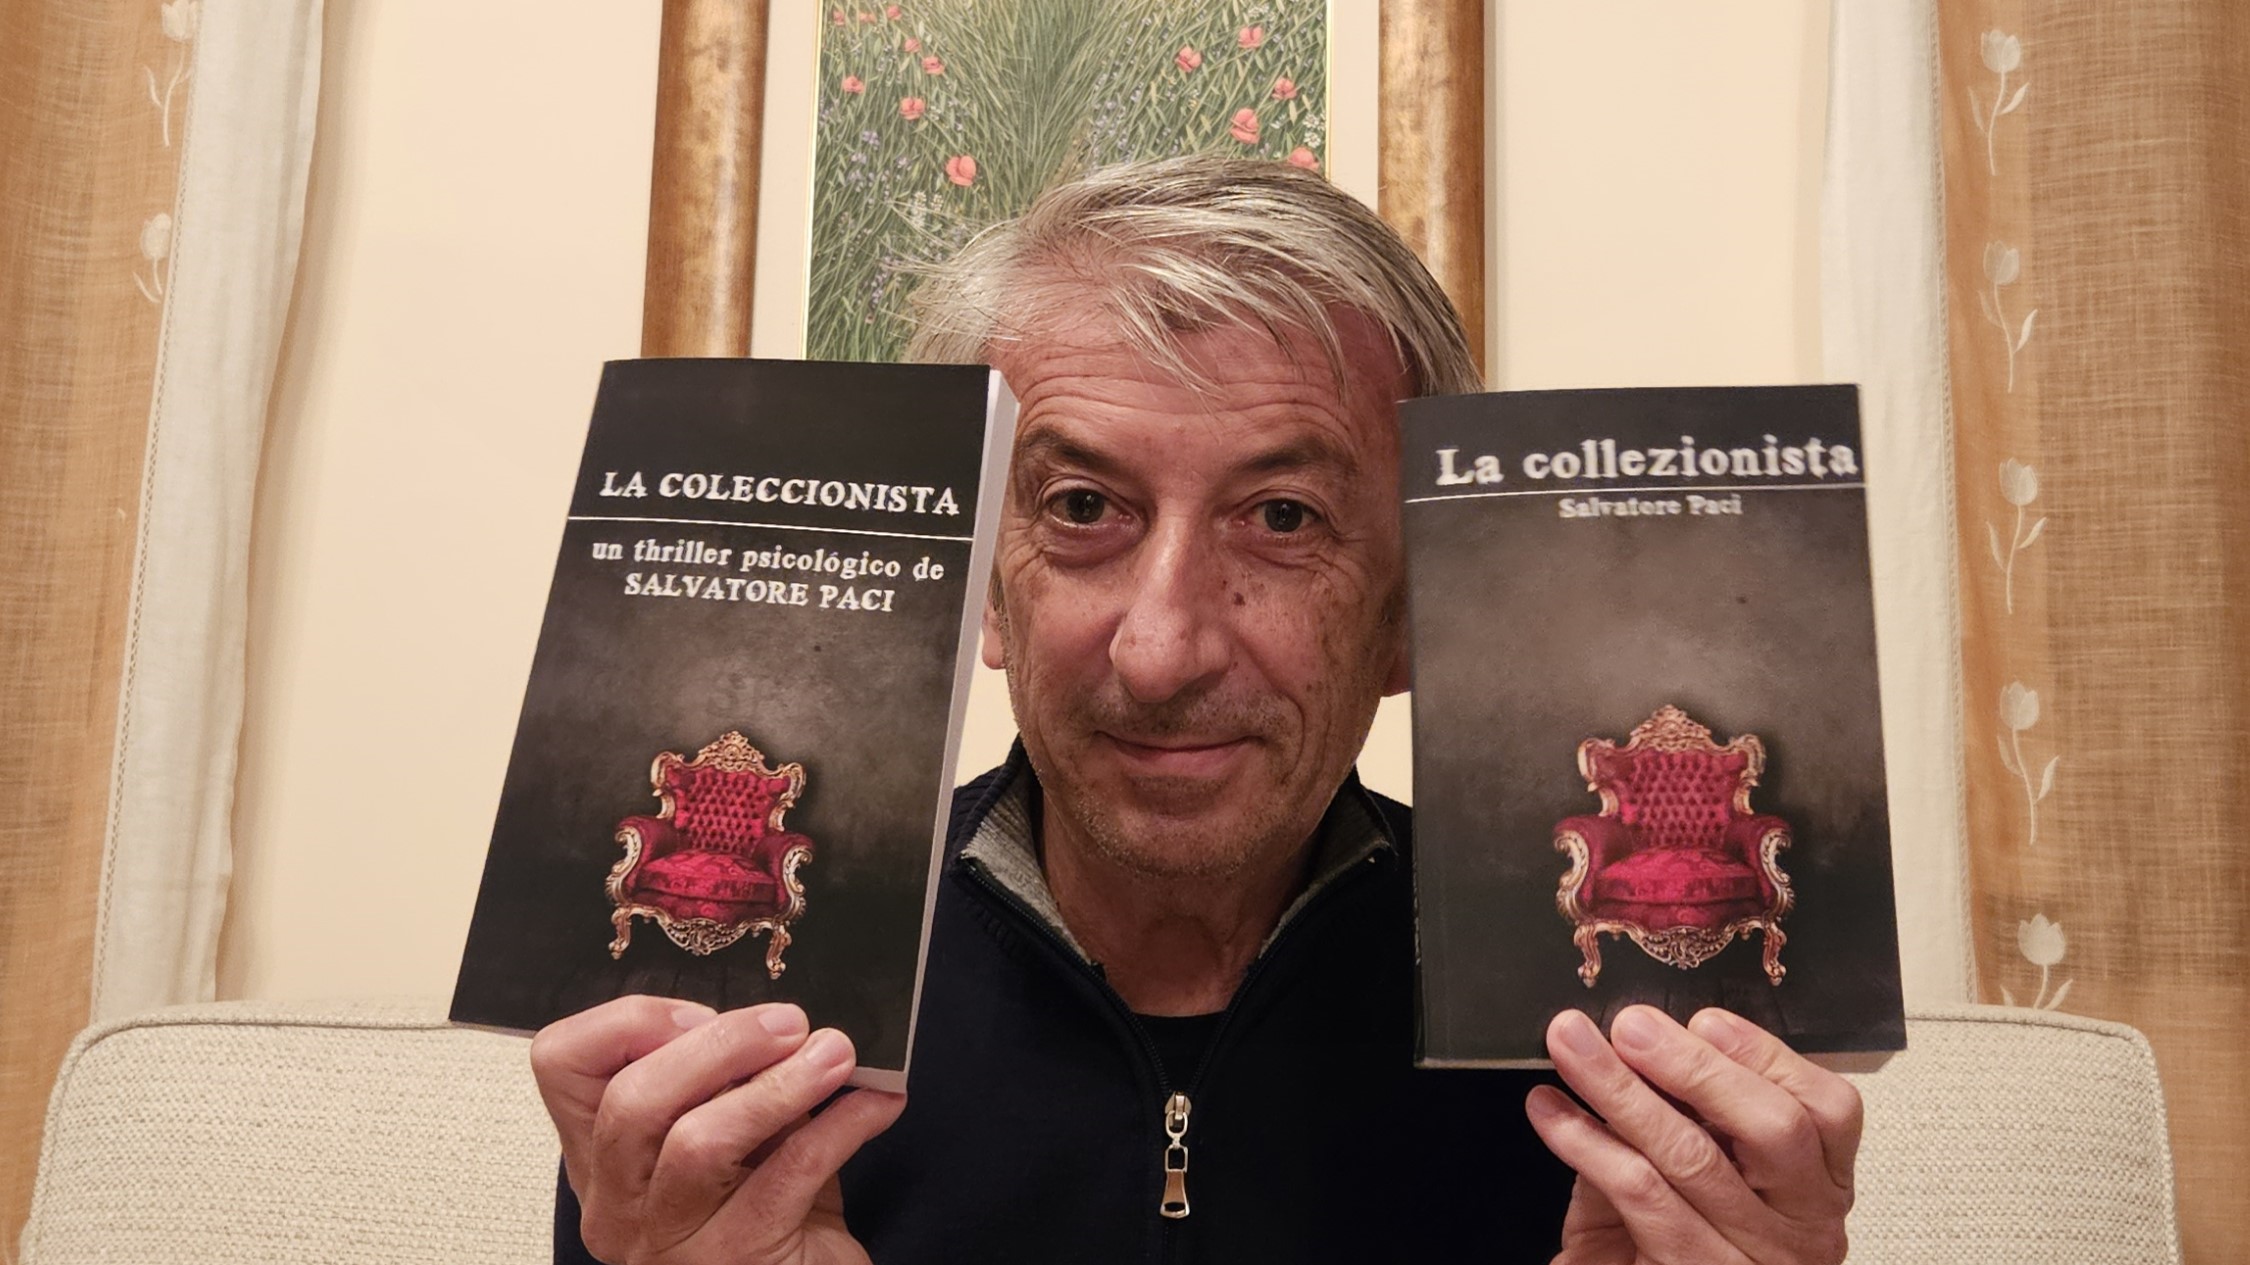 Lo scrittore nisseno Salvatore Paci raddoppia e approda nel mercato spagnolo con “La coleccionista”